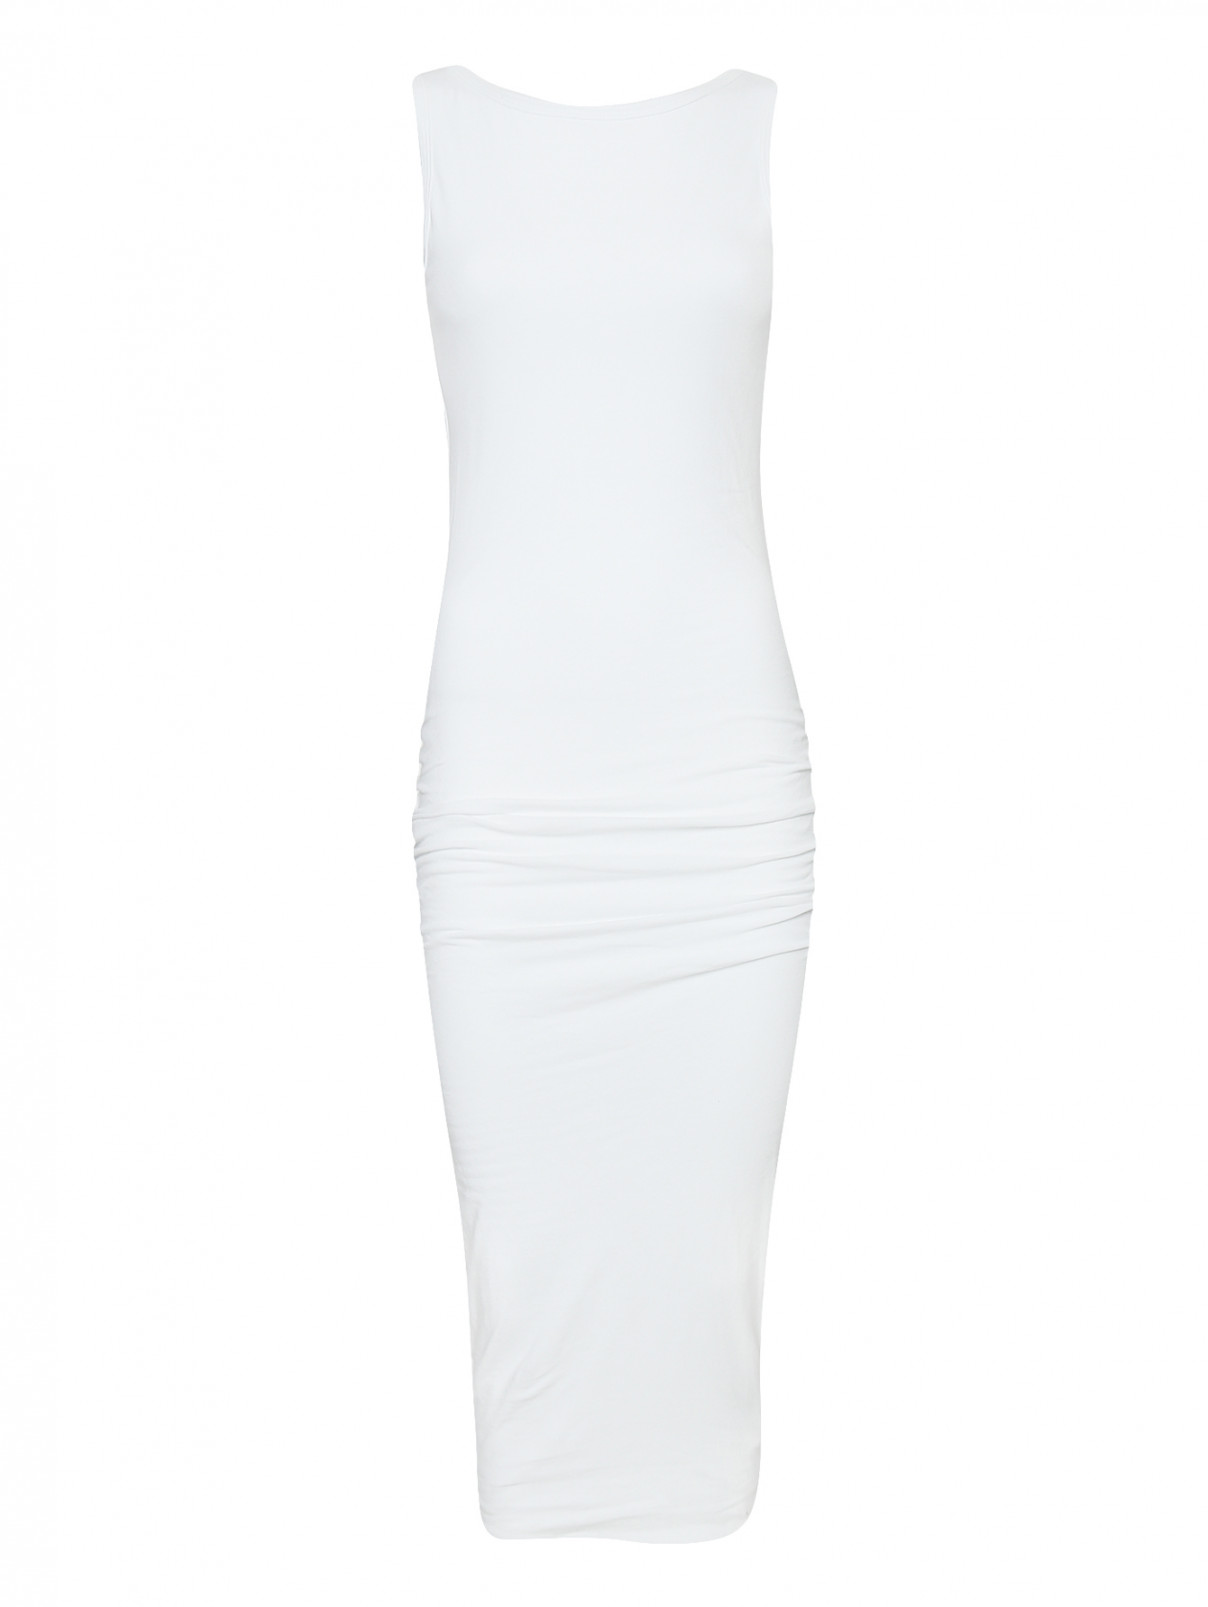 Трикотажное платье из хлопка без рукавов James Perse  –  Общий вид  – Цвет:  Белый